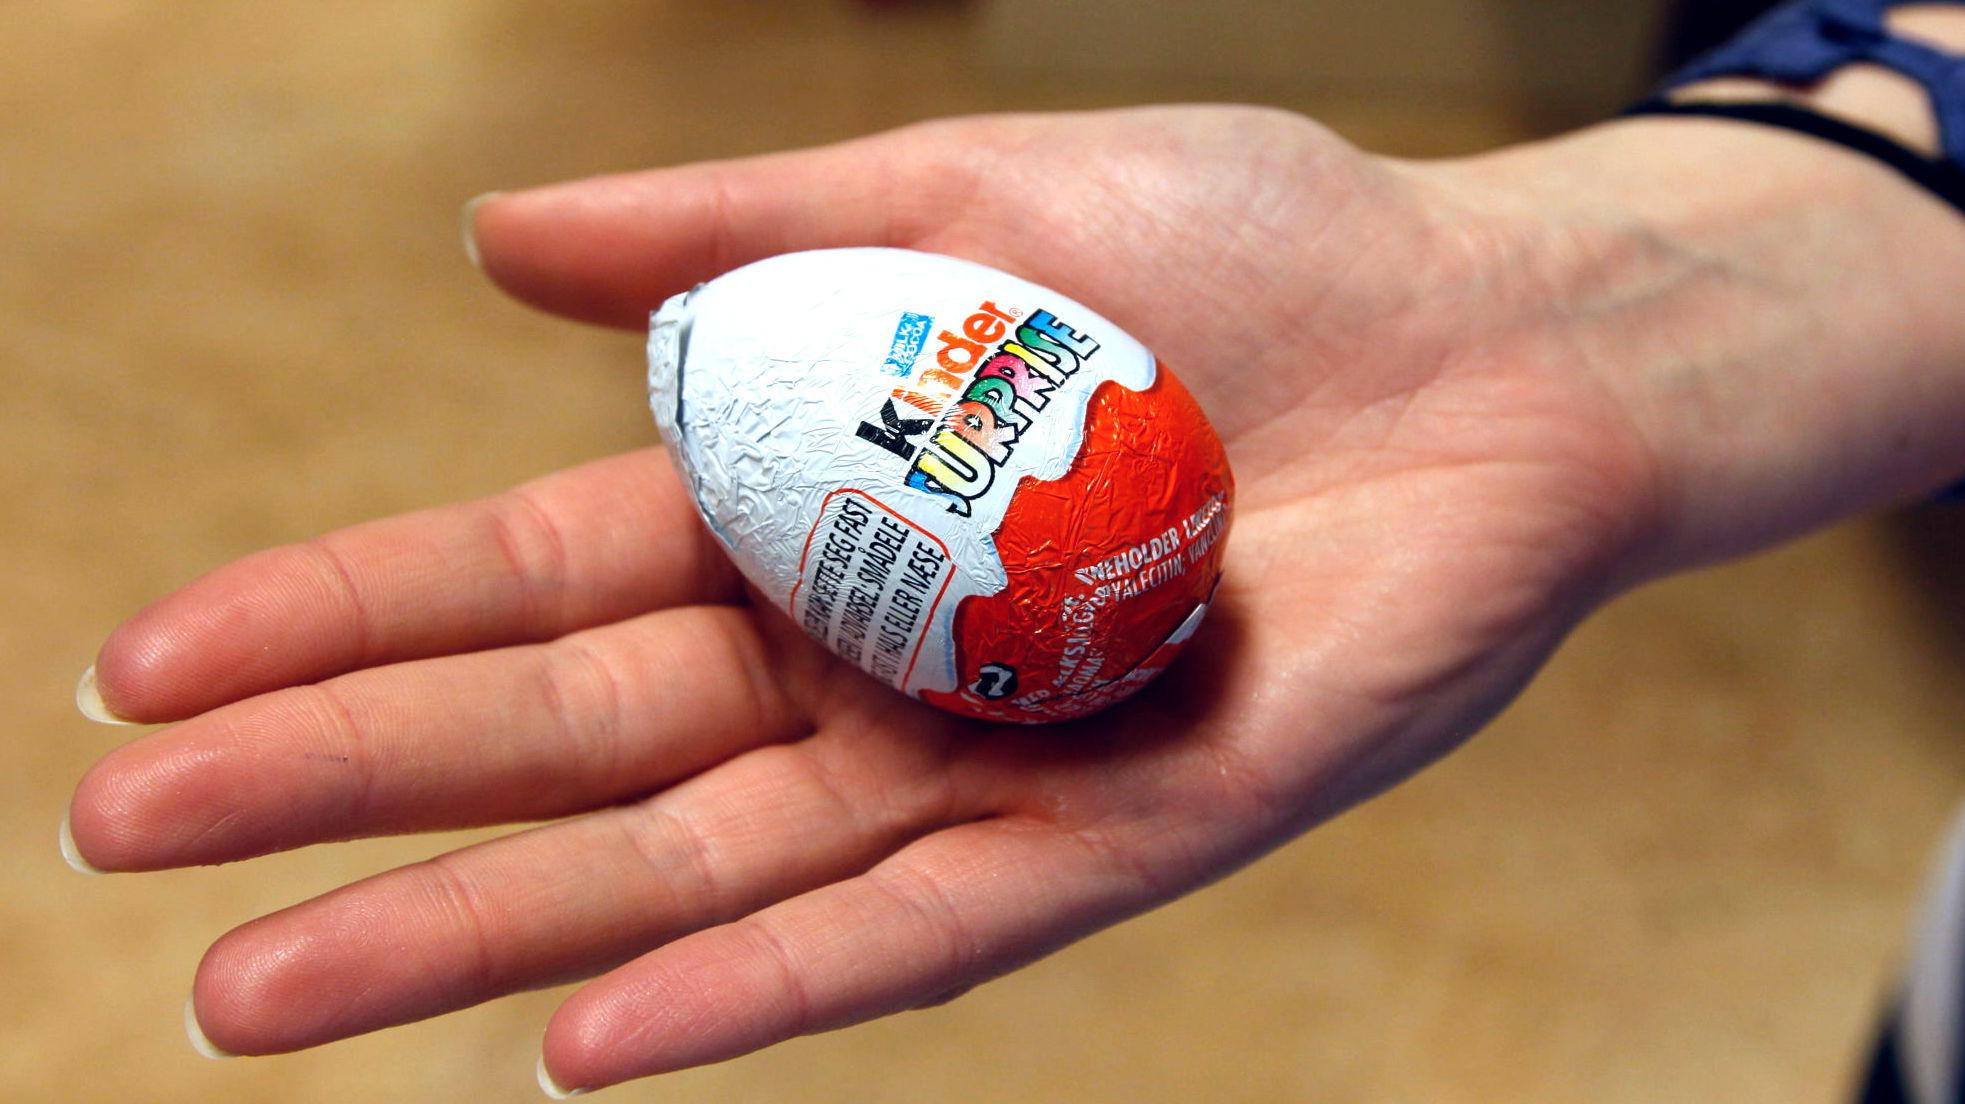 OMDISKUTERT: Kinderegg har vært ulovlig i USA siden 70-tallet. Nå har Ferrero, som produserer egget, gjort en endring som gjør det lovlig. Foto: Hallgeir Vågenes/VG